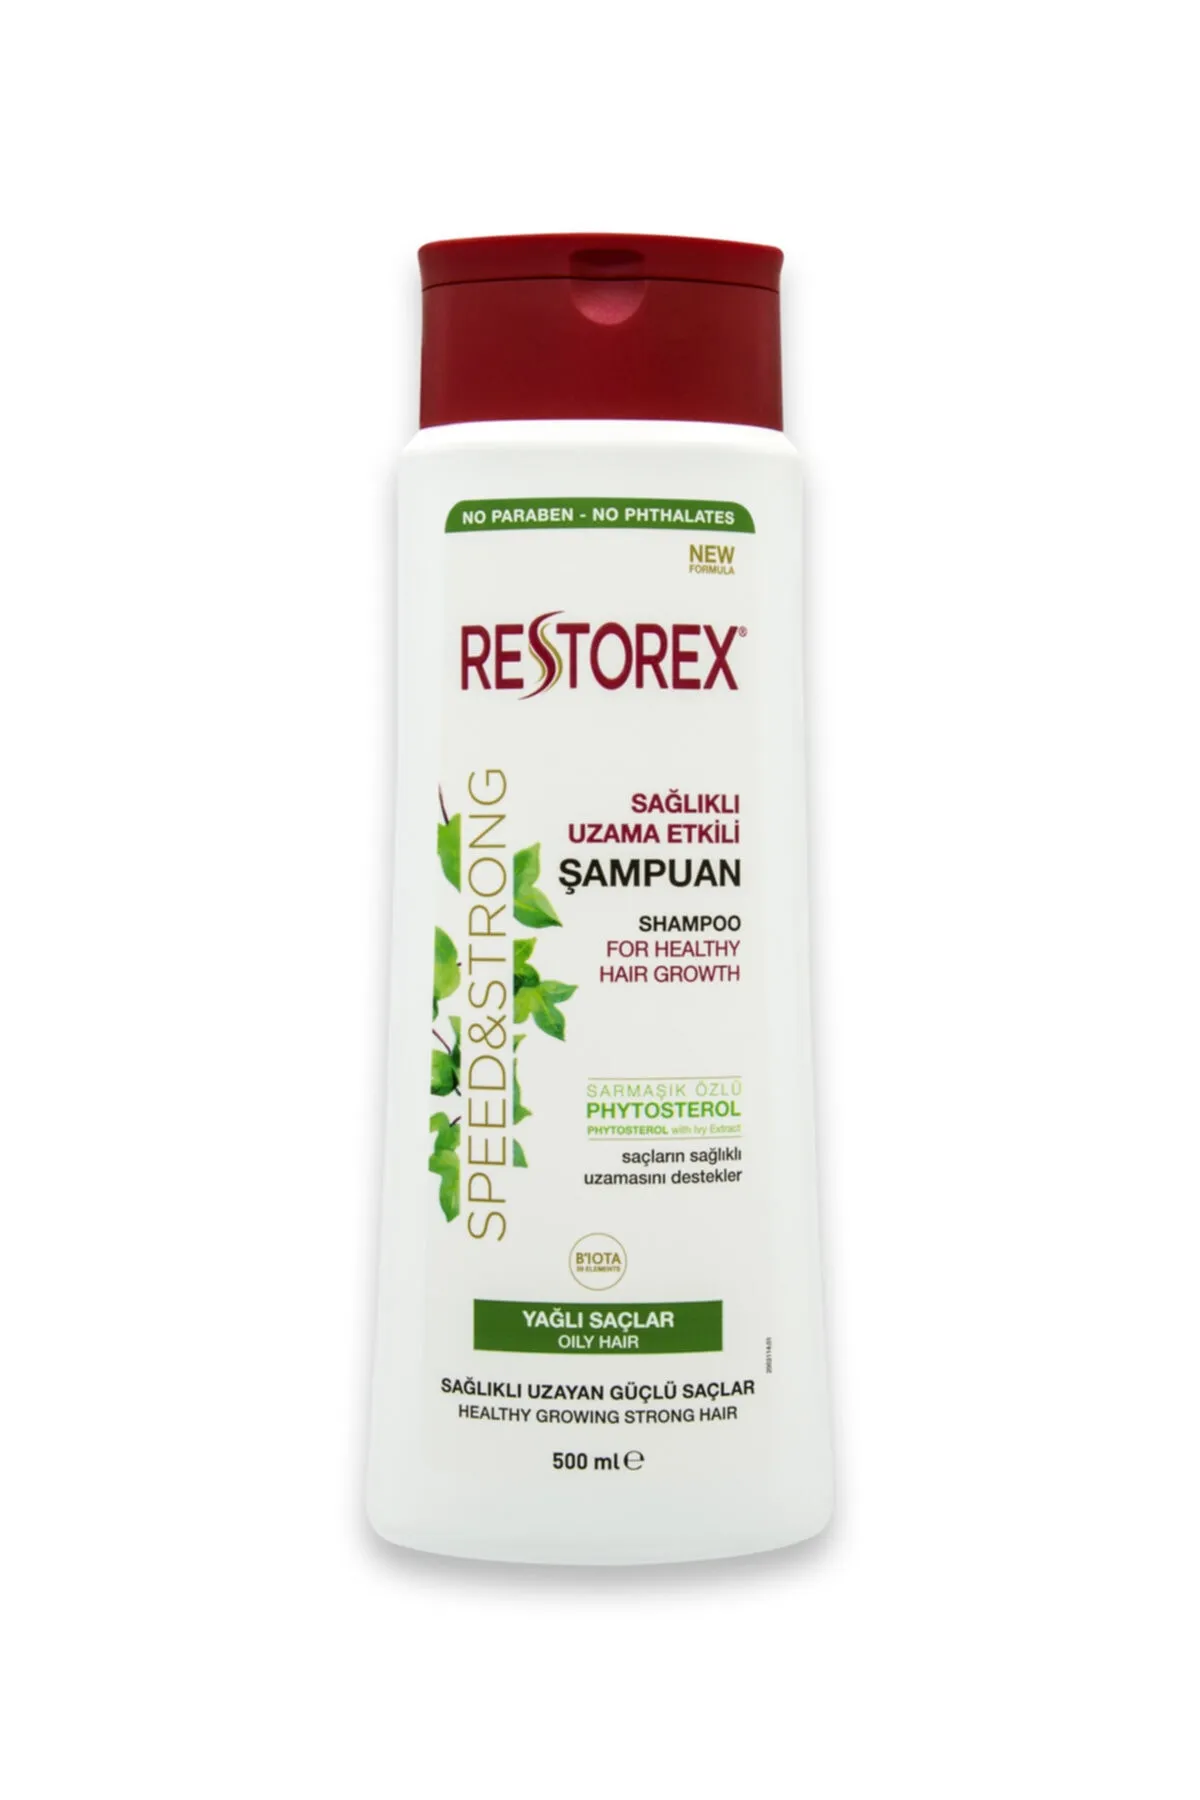 Restorex İnce Telli ve Yağlı Saçlar için Arındırıcı Bakım Şampuanı 500 ml - 1